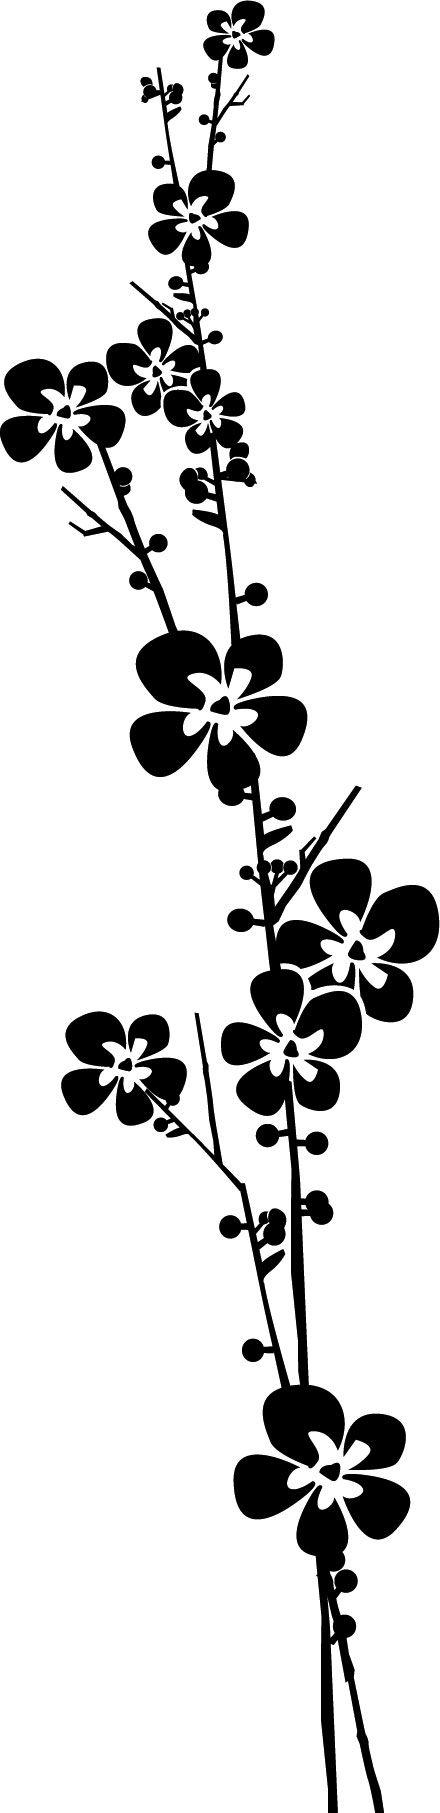 花のイラスト フリー素材 フレーム枠no 478 白黒 枝葉 縦長